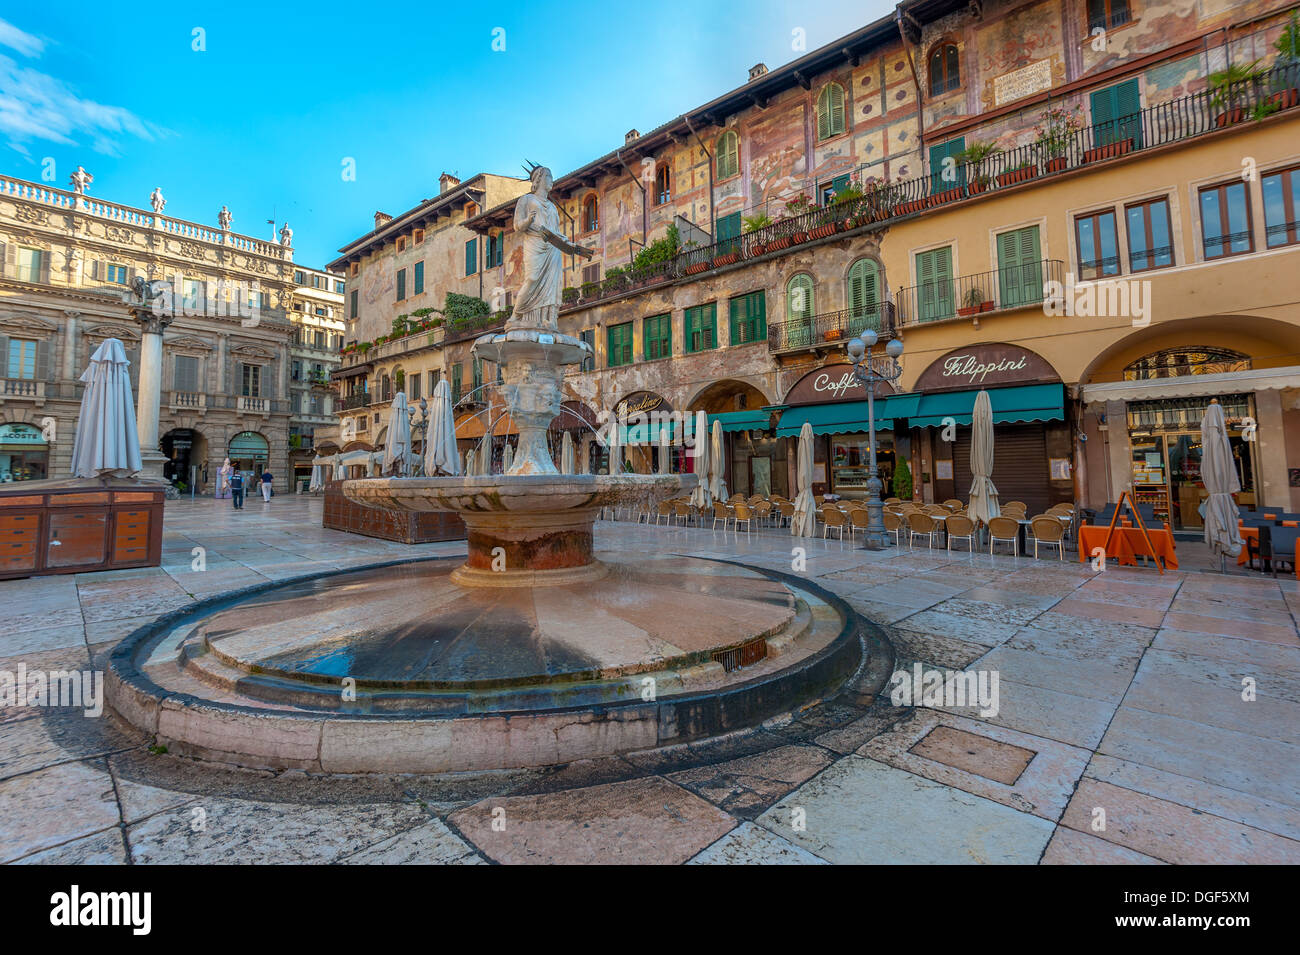 La Piazza delle Erbe y el Palazzo Maffei, Verona, Italia Foto de stock